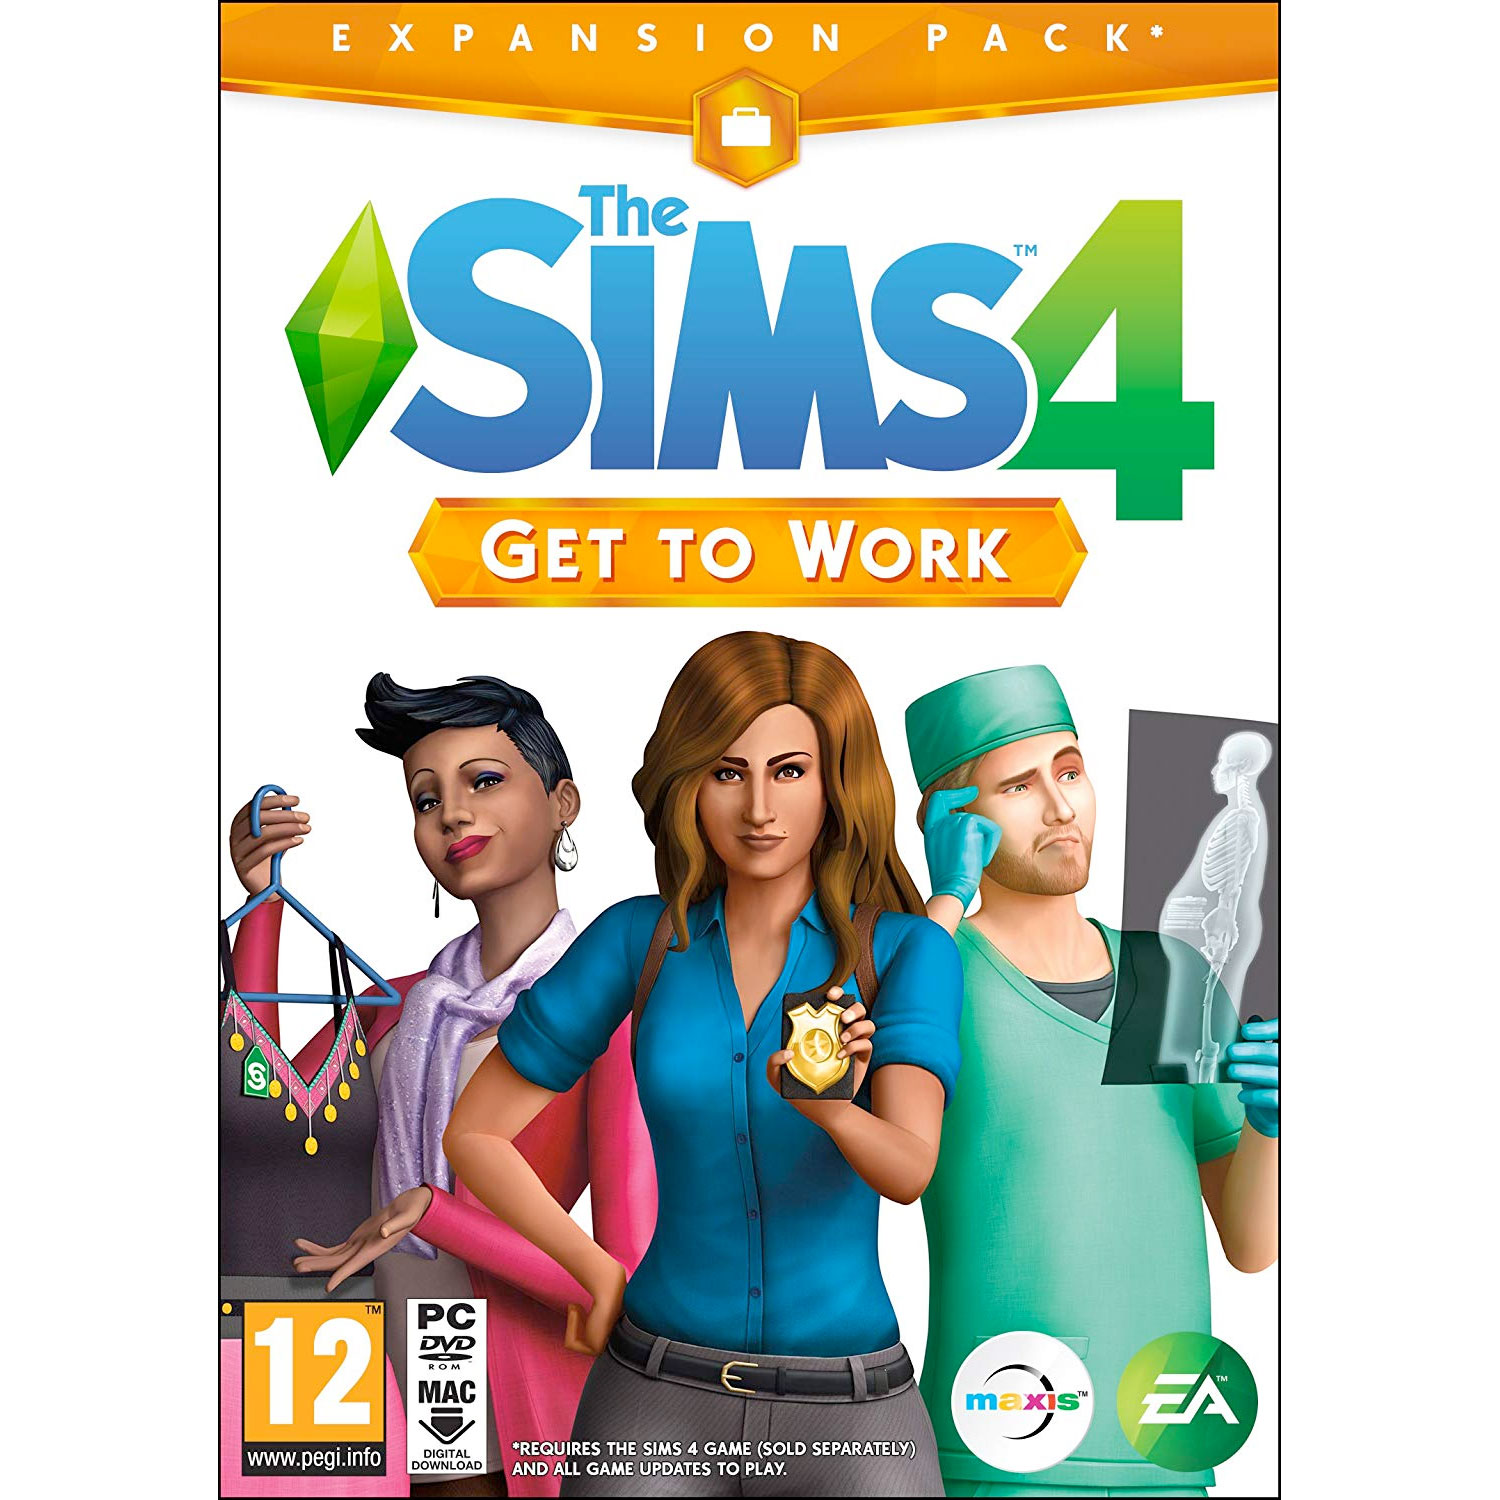 Sims 4 Mac Download Uk